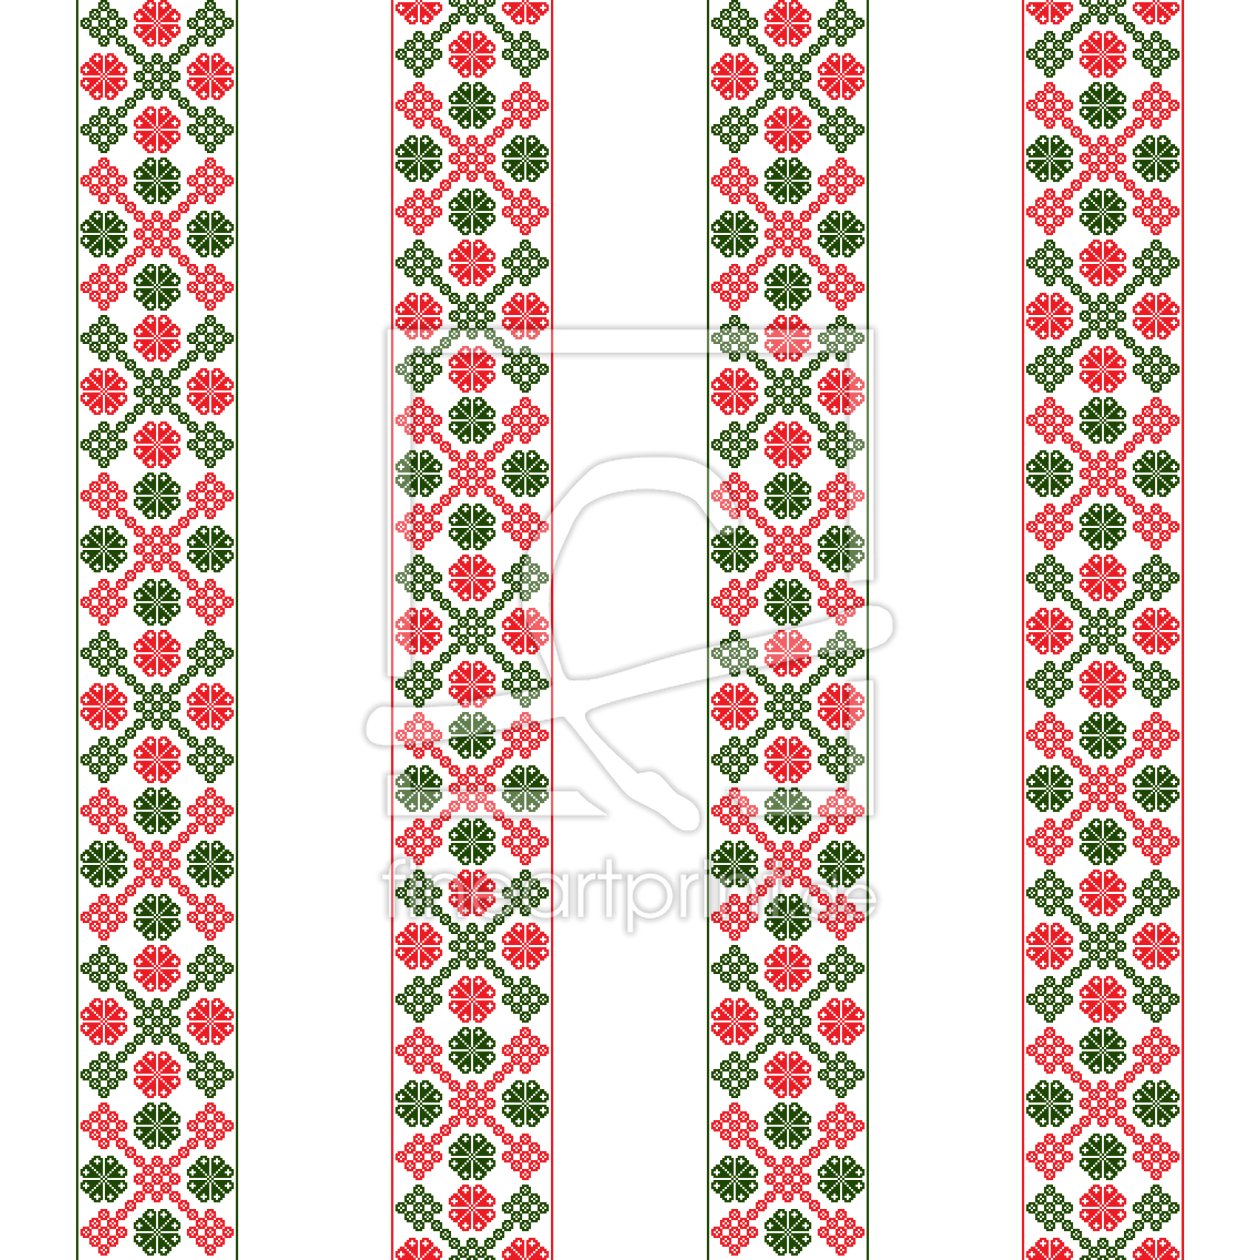 Bild-Nr.: 9015029 Vertikale Ungarische Bordüre erstellt von patterndesigns-com